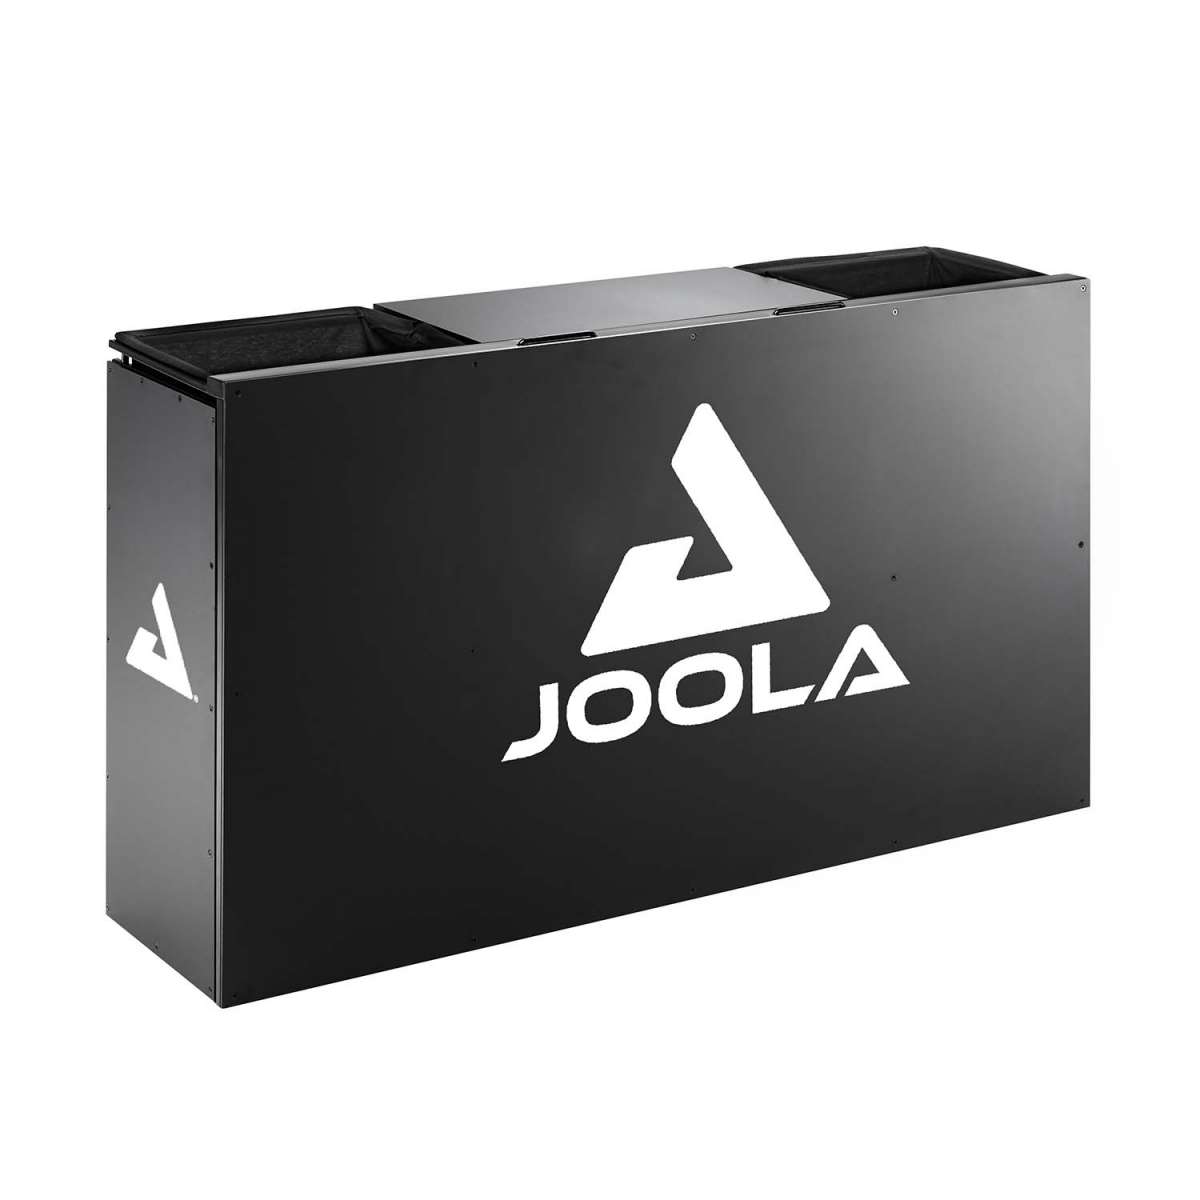 JOOLA Umpire Table + box